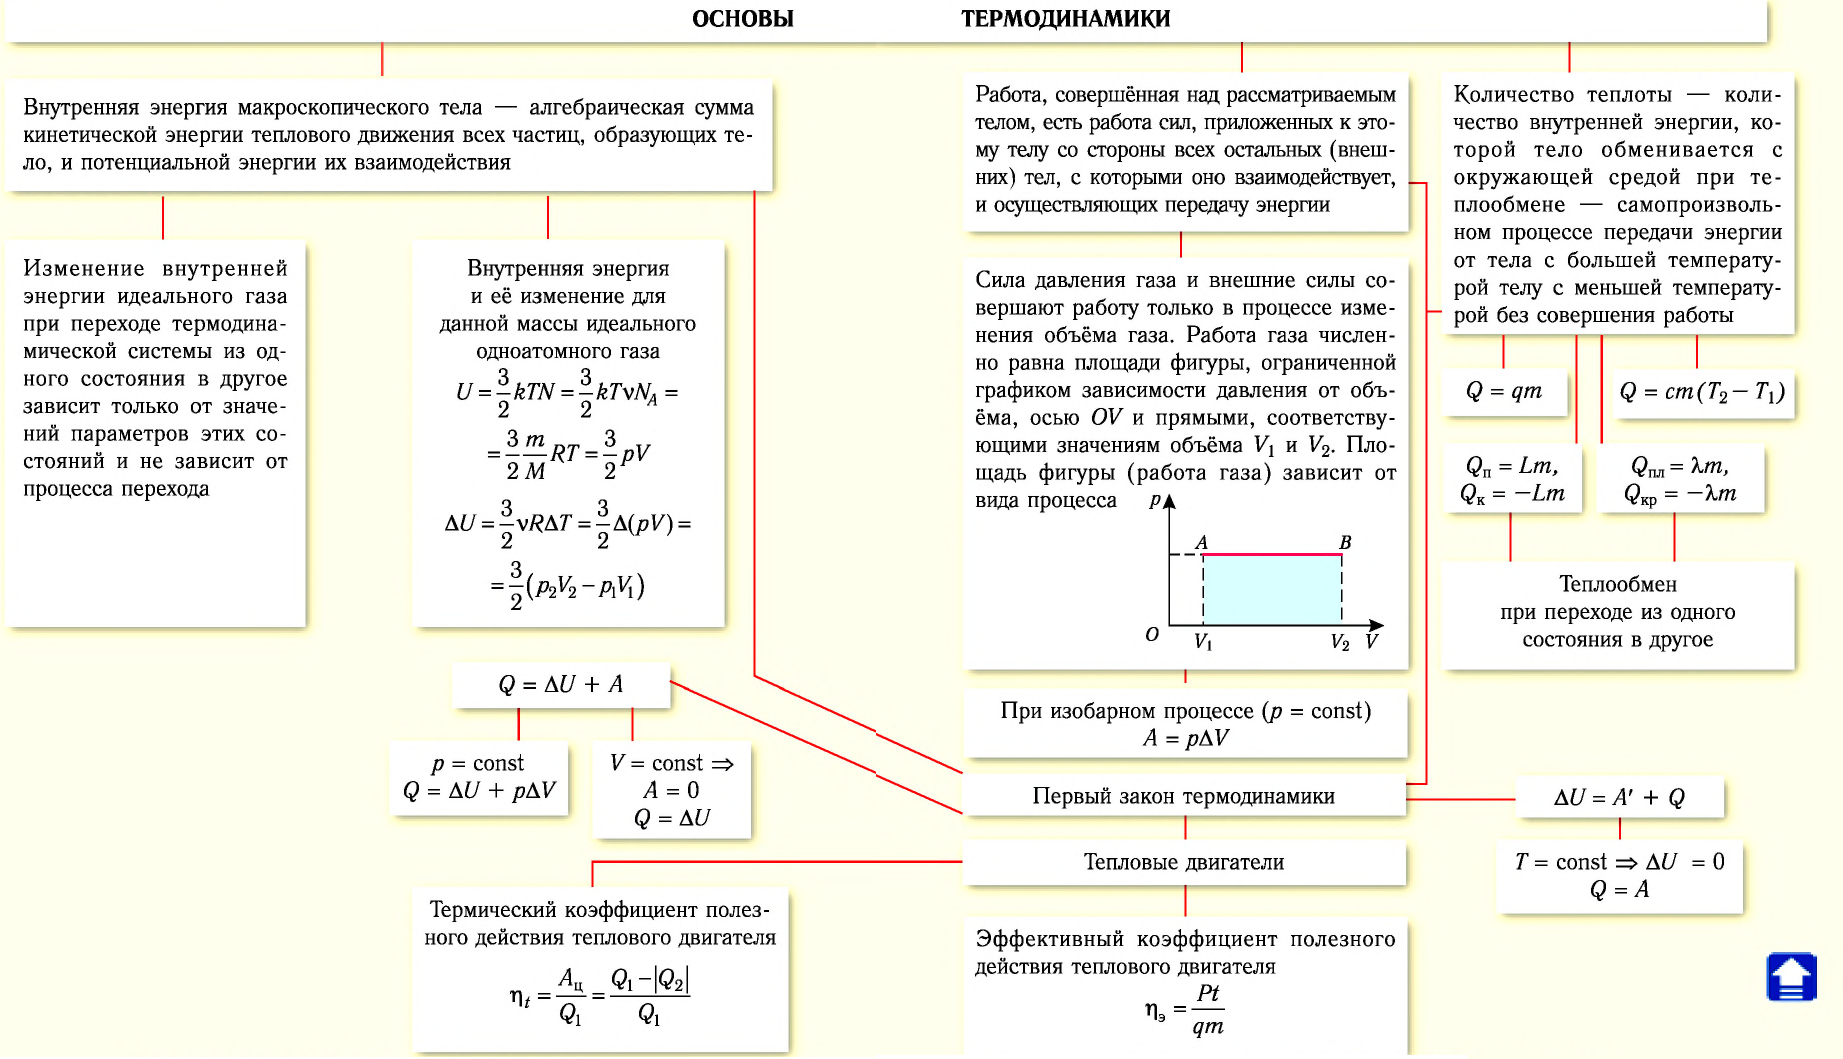 Тепловые двигатели и их КПД - принцип действия, цикл Карно, формулы и определения с примерами